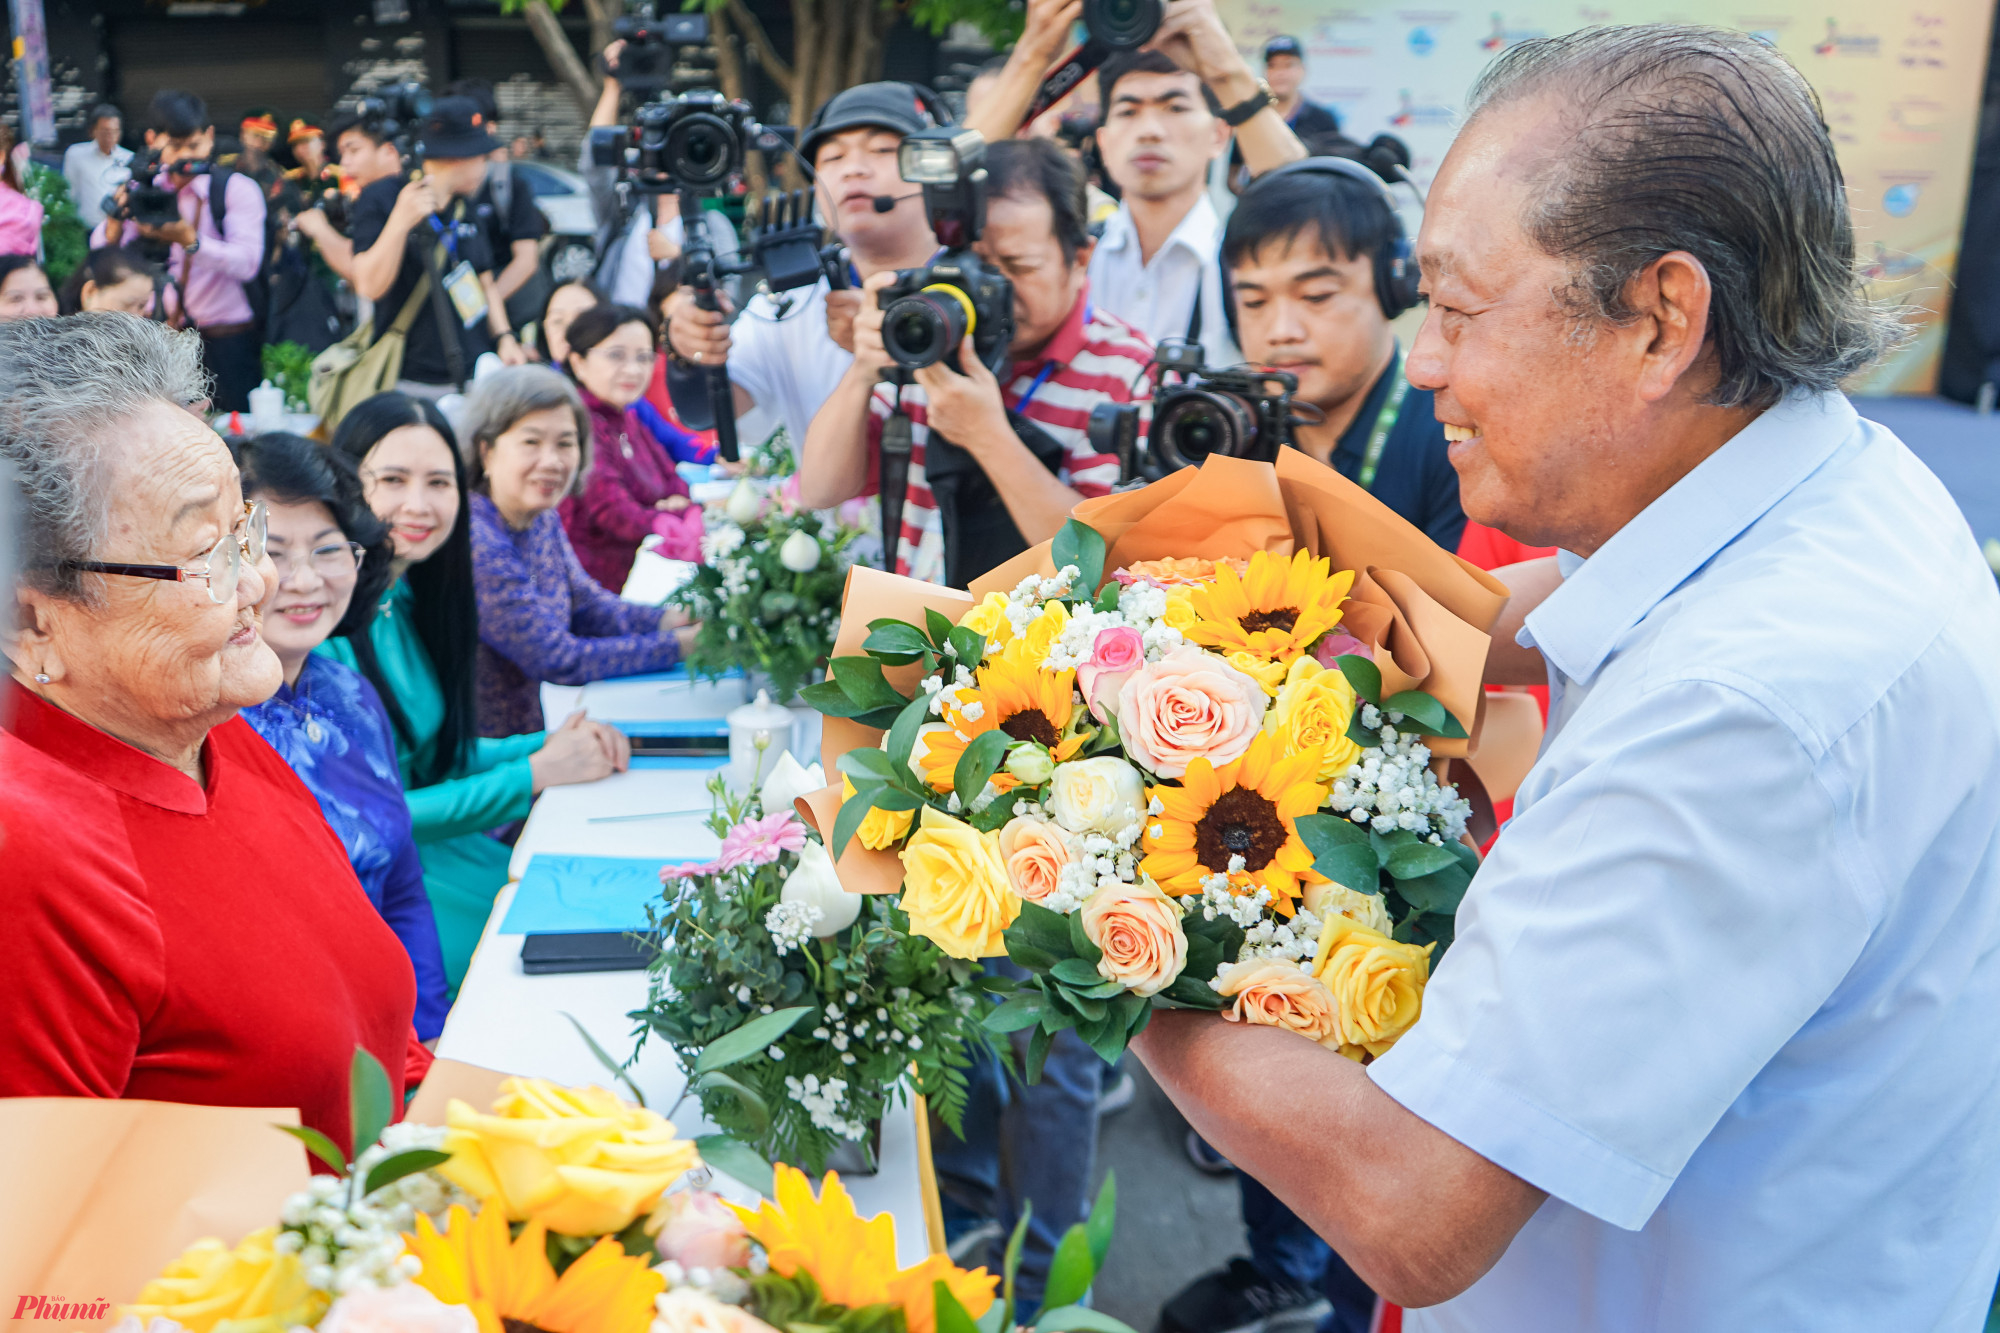  Đặc biệt, chương trình diễu hành năm nay còn có sự tham dự của đại sứ áo dài là hoa hậu, văn nghệ sĩ nổi tiếng cùng các mẹ Việt Nam anh hùng, các nữ huấn luyện viên và vận động viên tiêu biểu cùng một số đại biểu các quận huyện về tham dự.